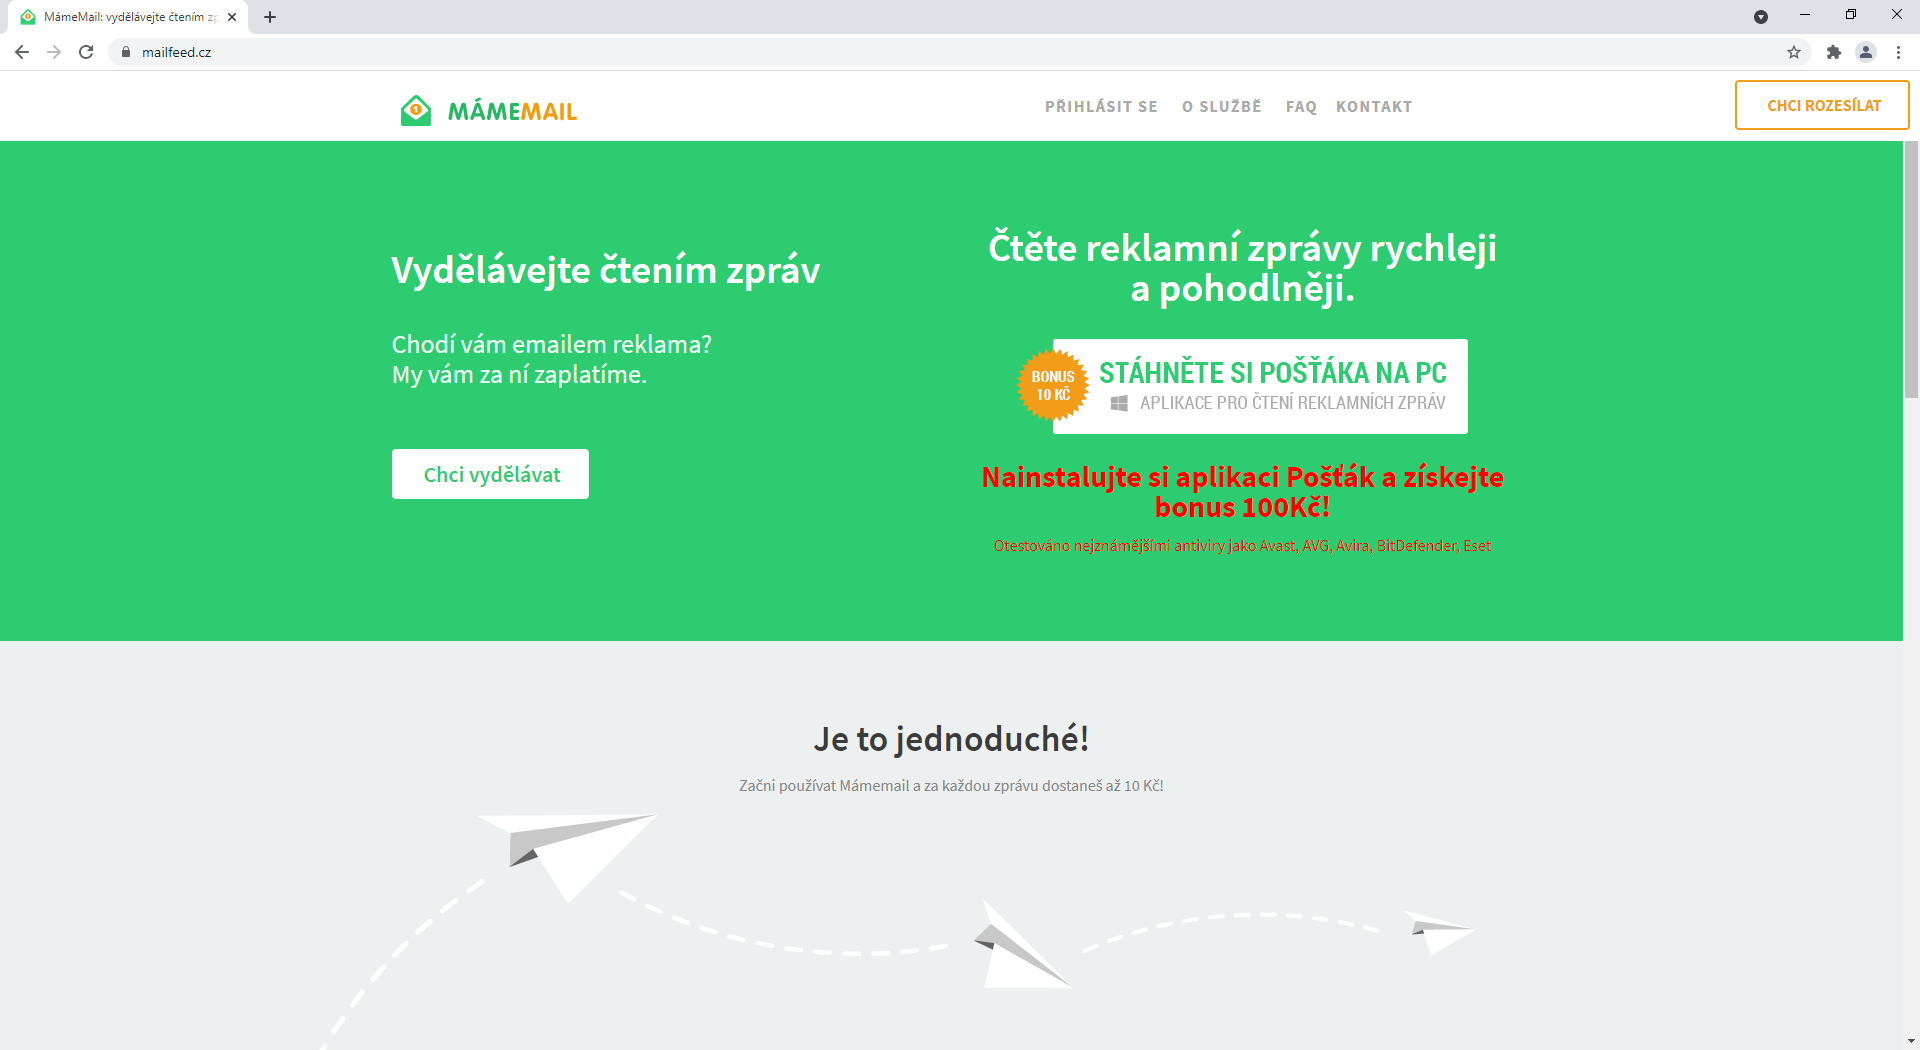 Mailfeed.cz - podvodná stránka